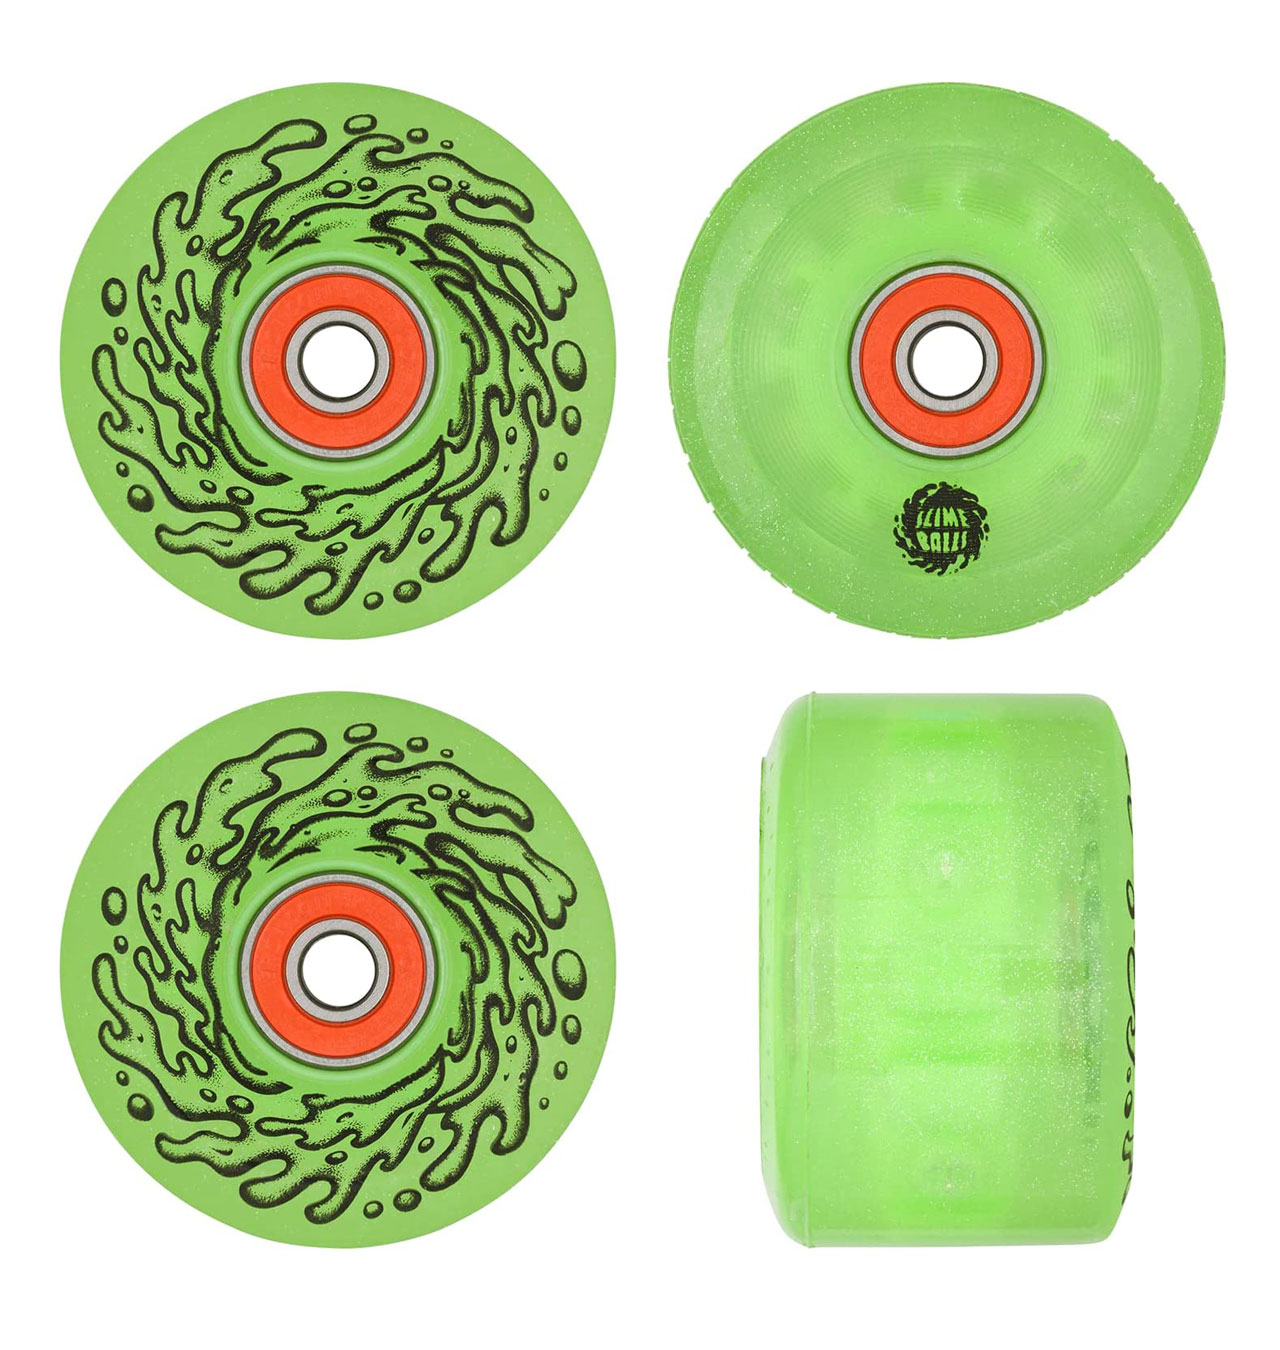 Slime-Balls---Light-Ups-OG-Slime-Green-Glitter-78a-Skateboard-Wheels-